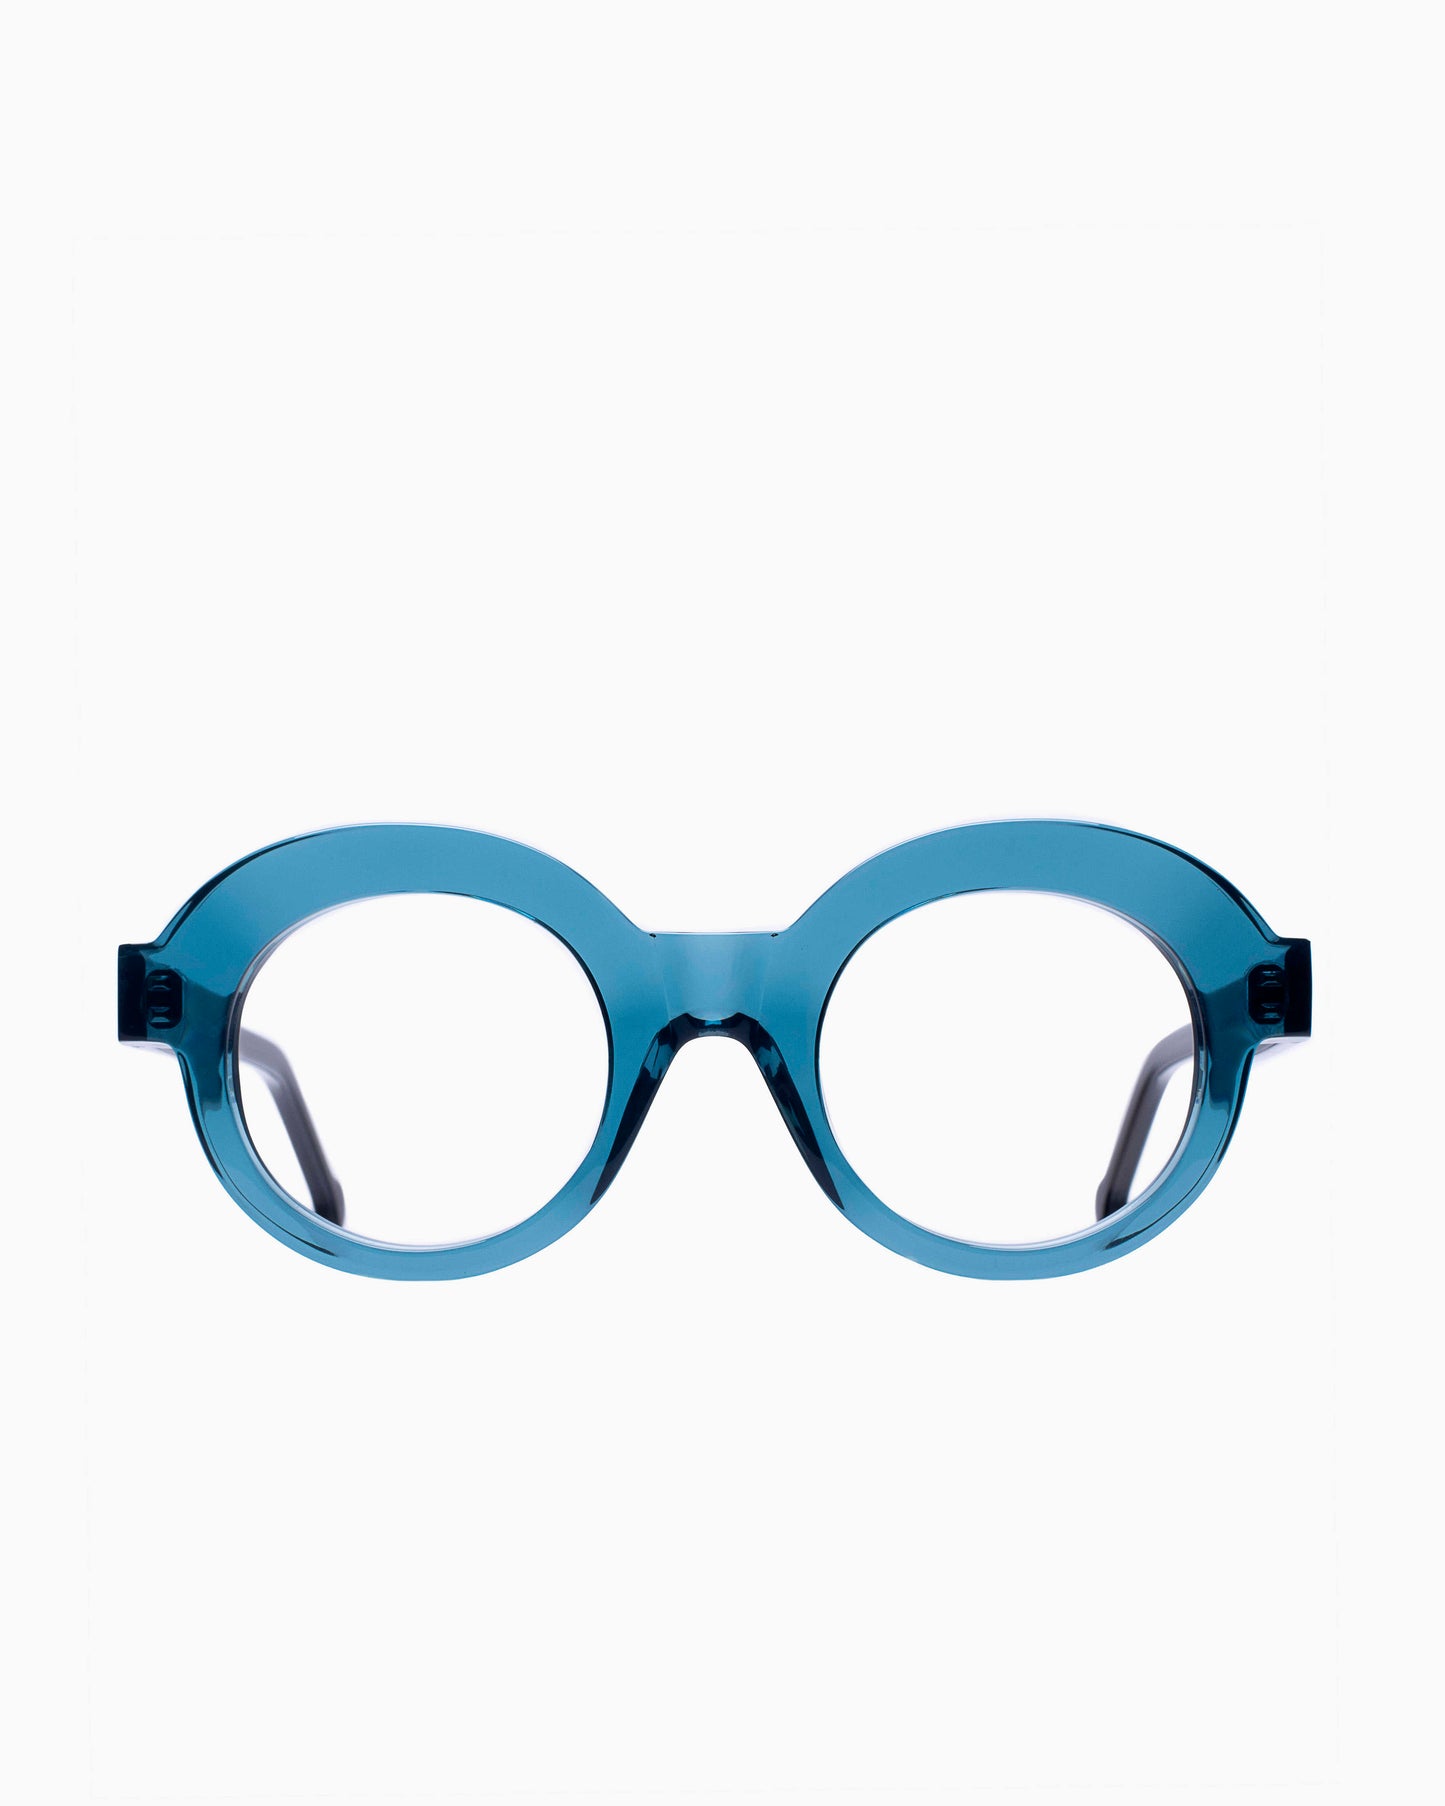 Marie-Sophie Dion - Latraverse1 - Blu | Bar à lunettes